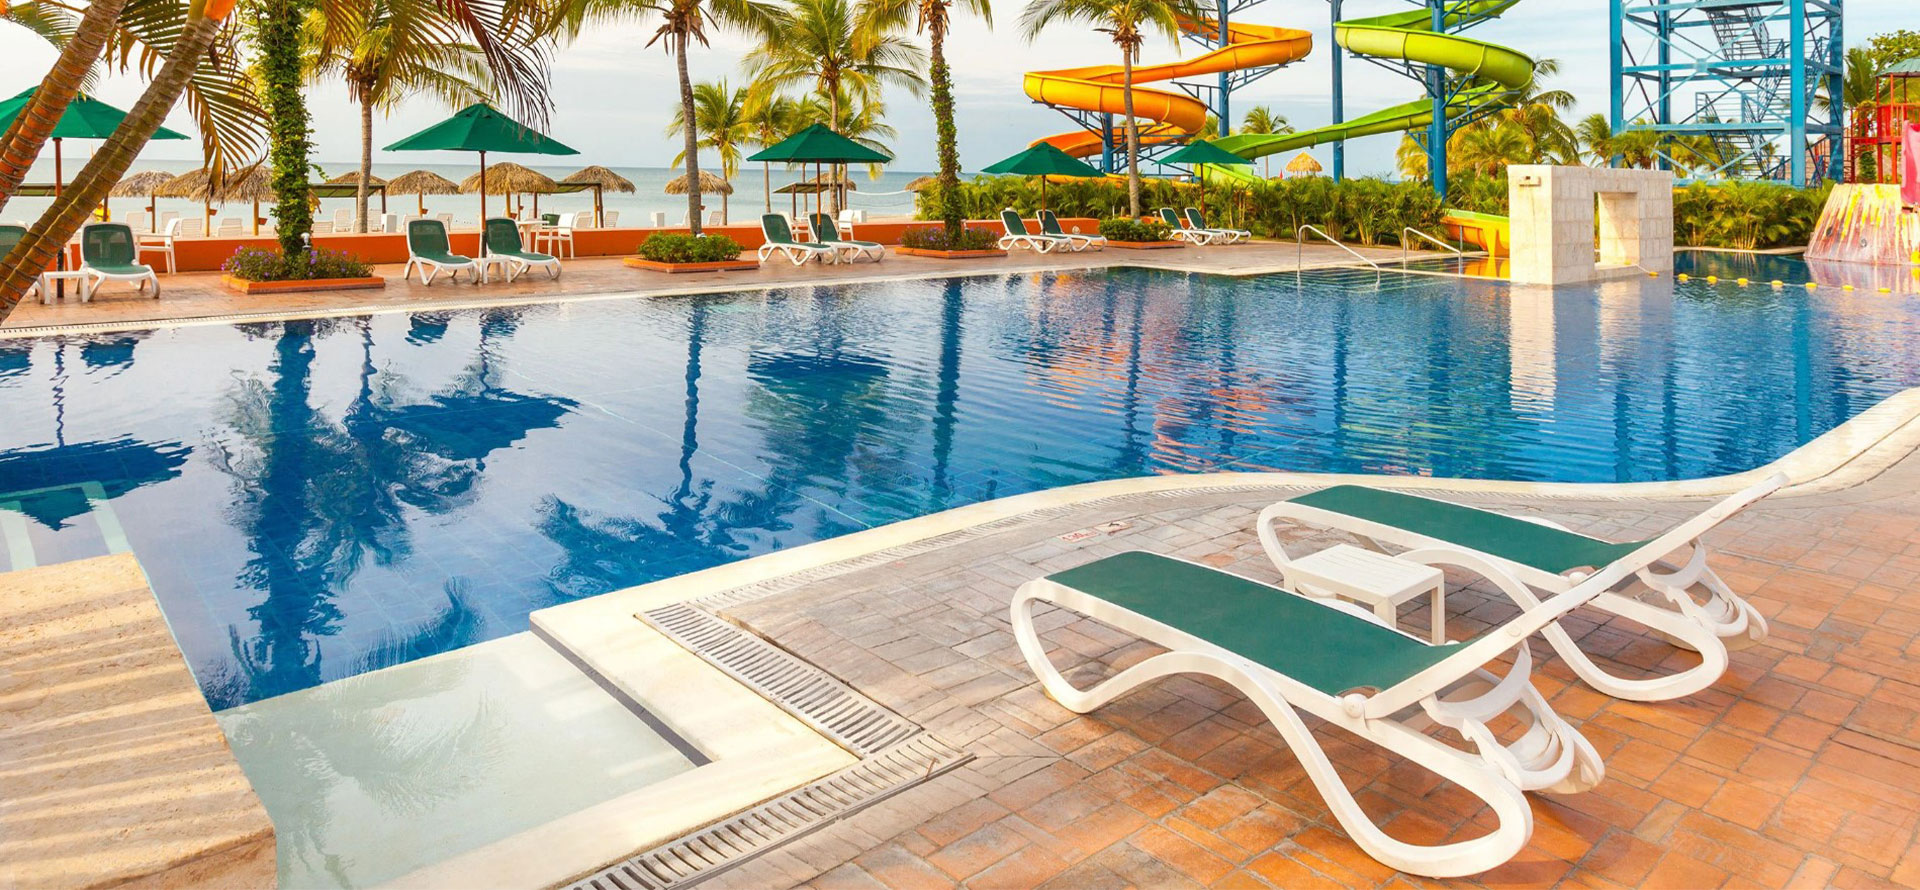 Swimming pool in Resort at Panama.